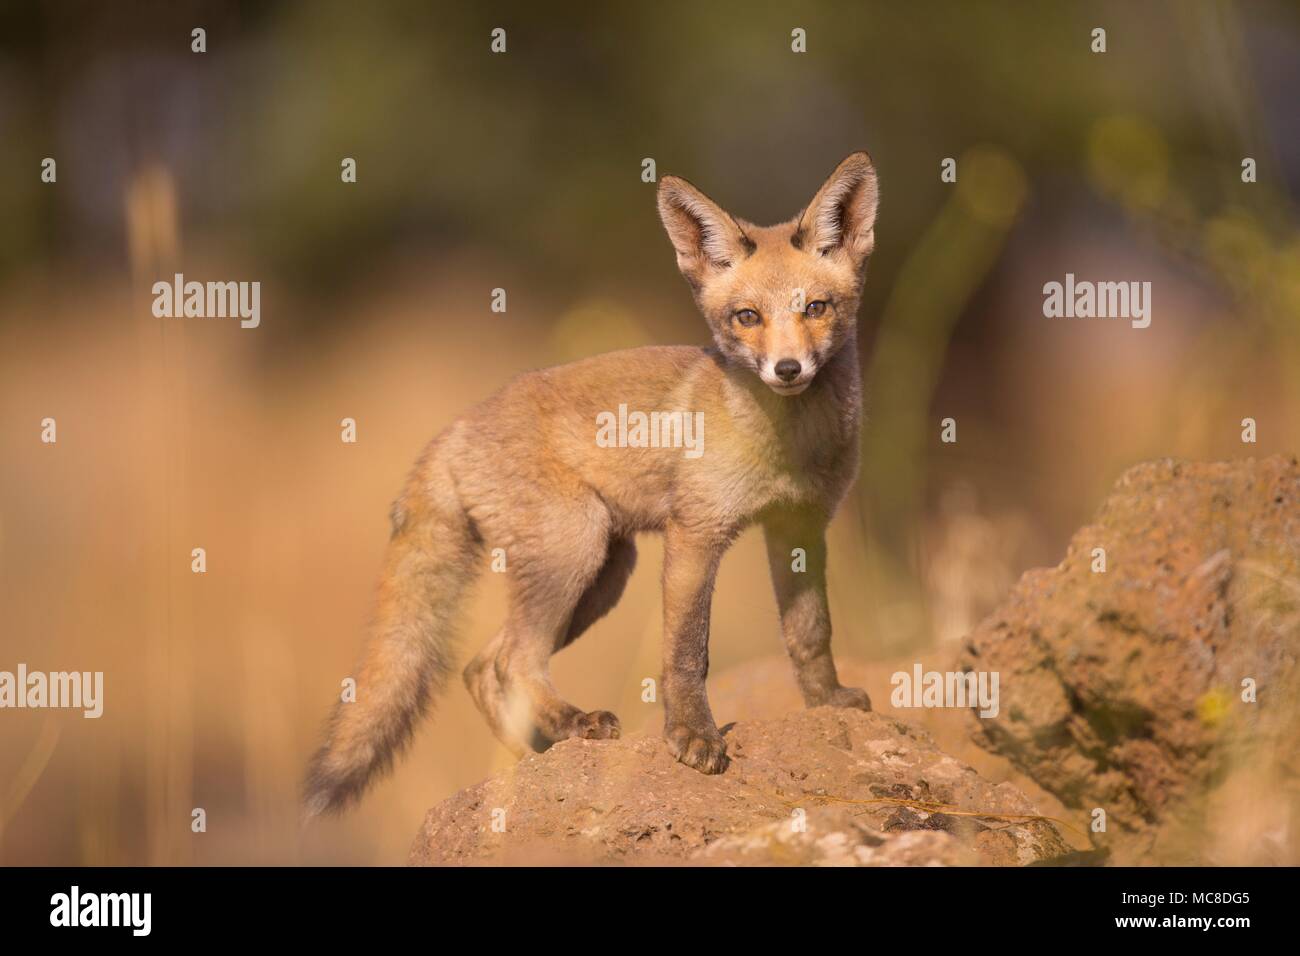 Juvenile Red Fox (Vulpes vulpes). Die Red Fox ist die größte der echte Füchse, als auch geographisch verteilt Mitglied der Carnivora, über die gesamte nördliche Hemisphäre vom Polarkreis verteilt wird, nach Nordafrika, Mittelamerika, und die Steppen Asiens. In Israel fotografiert, im Juni. Stockfoto